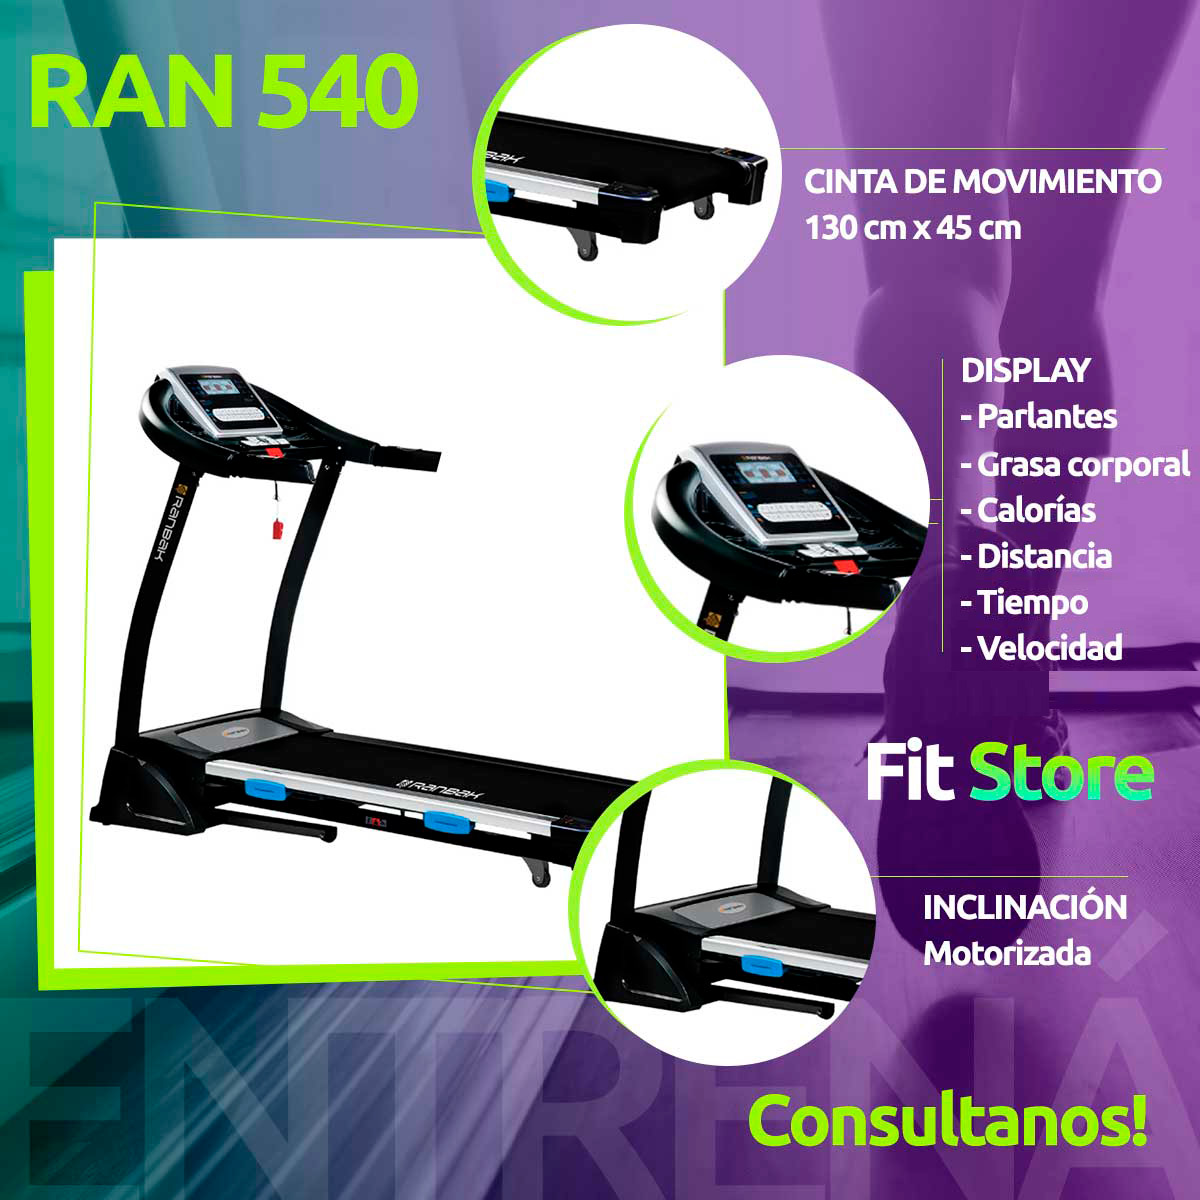 Cinta para Correr Ranbak 540 - Fit Store - Equipos Fitness Hogar